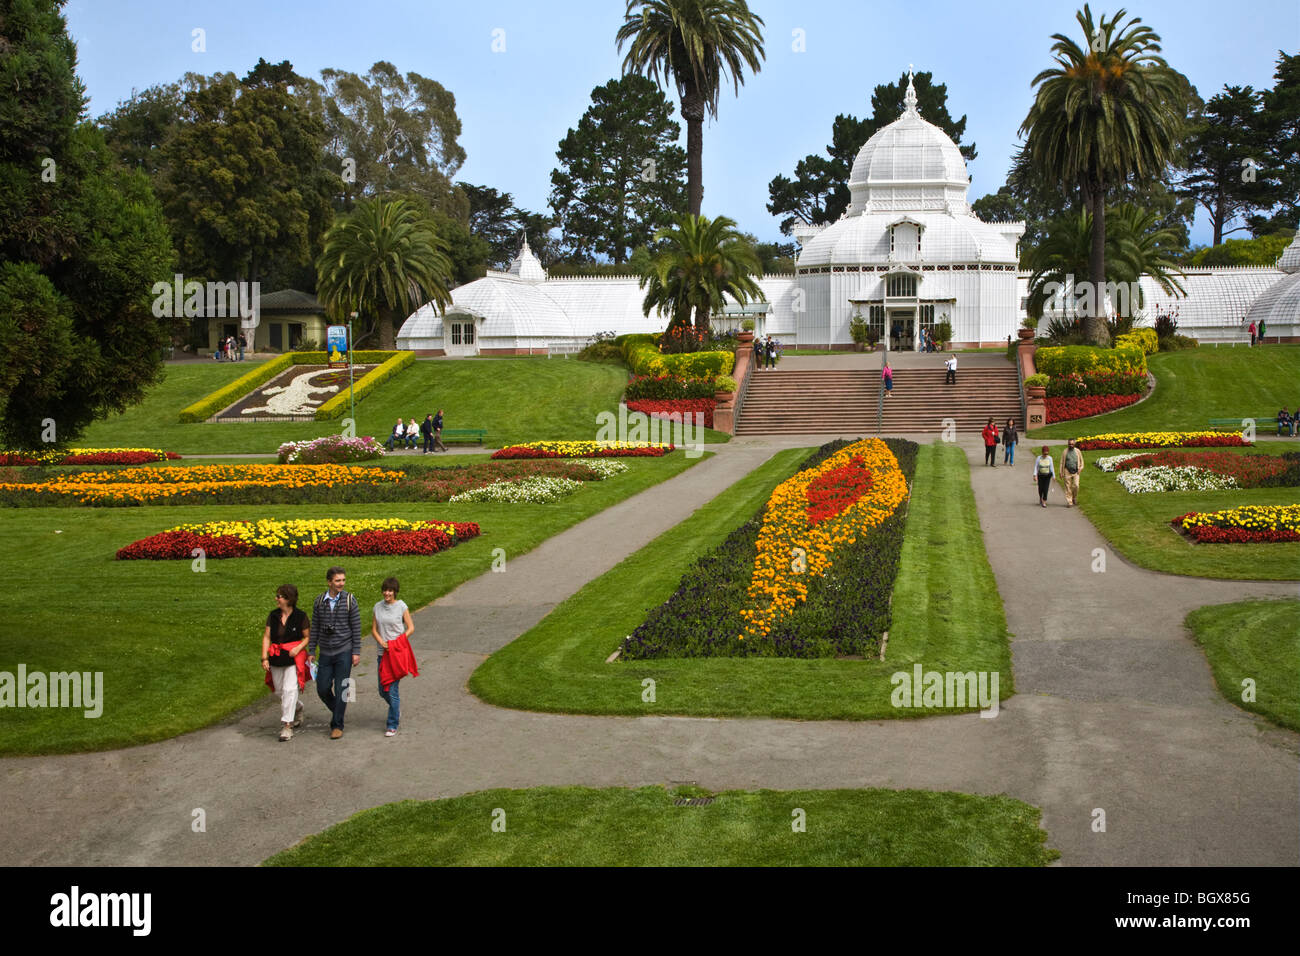 Les touristes visiter le CONSERVATOIRE DES FLEURS une serre botanique situé dans le GOLDEN GATE PARK - SAN FRANCISCO, CALIFORNIE Banque D'Images